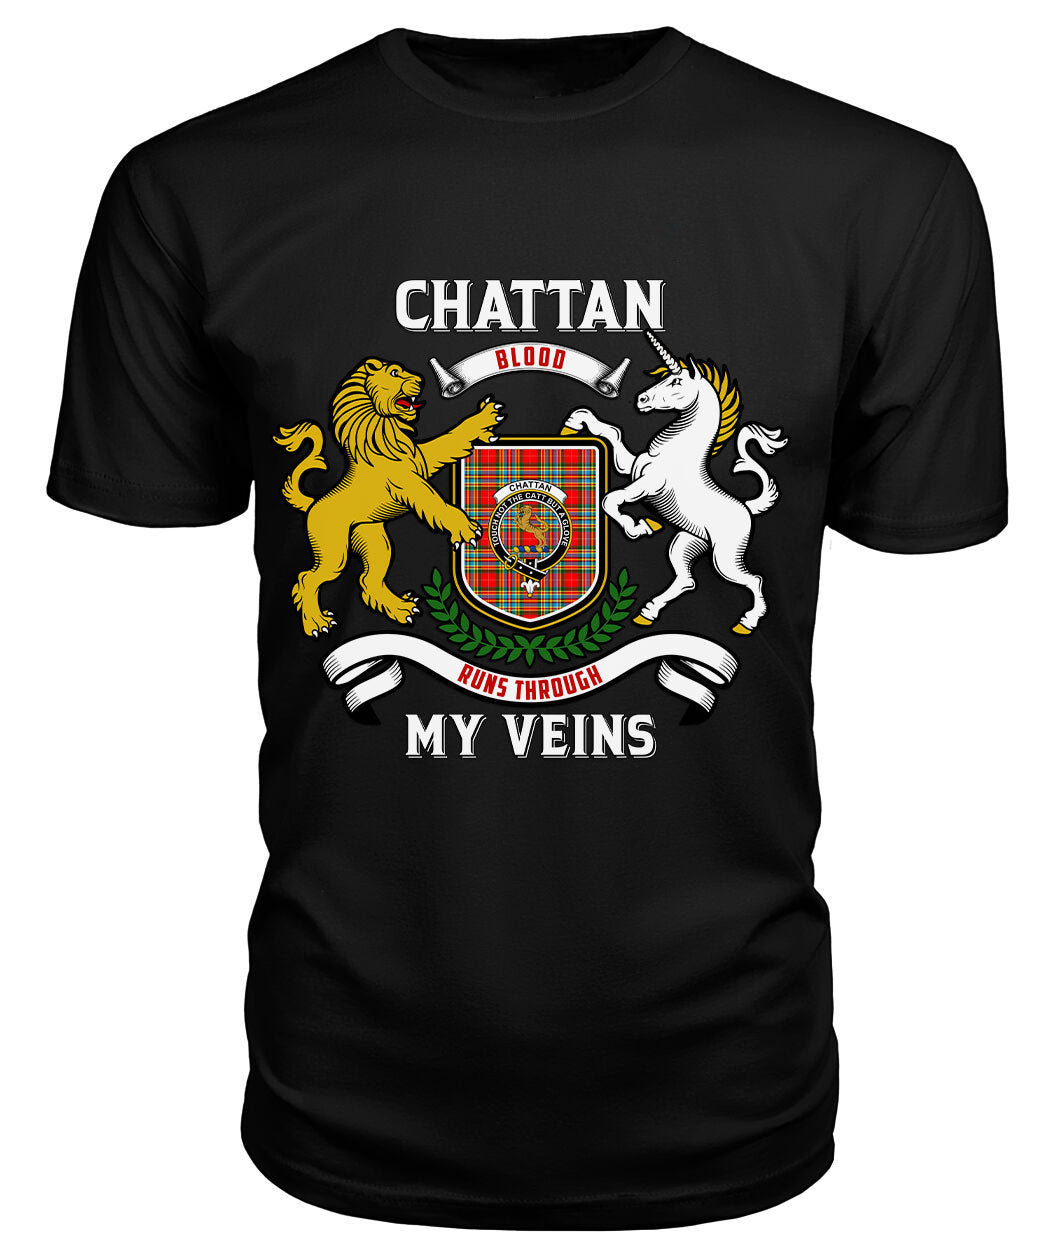 Chattan Tartan Crest 2D T-shirt - Blood Runs Through My Veins Style